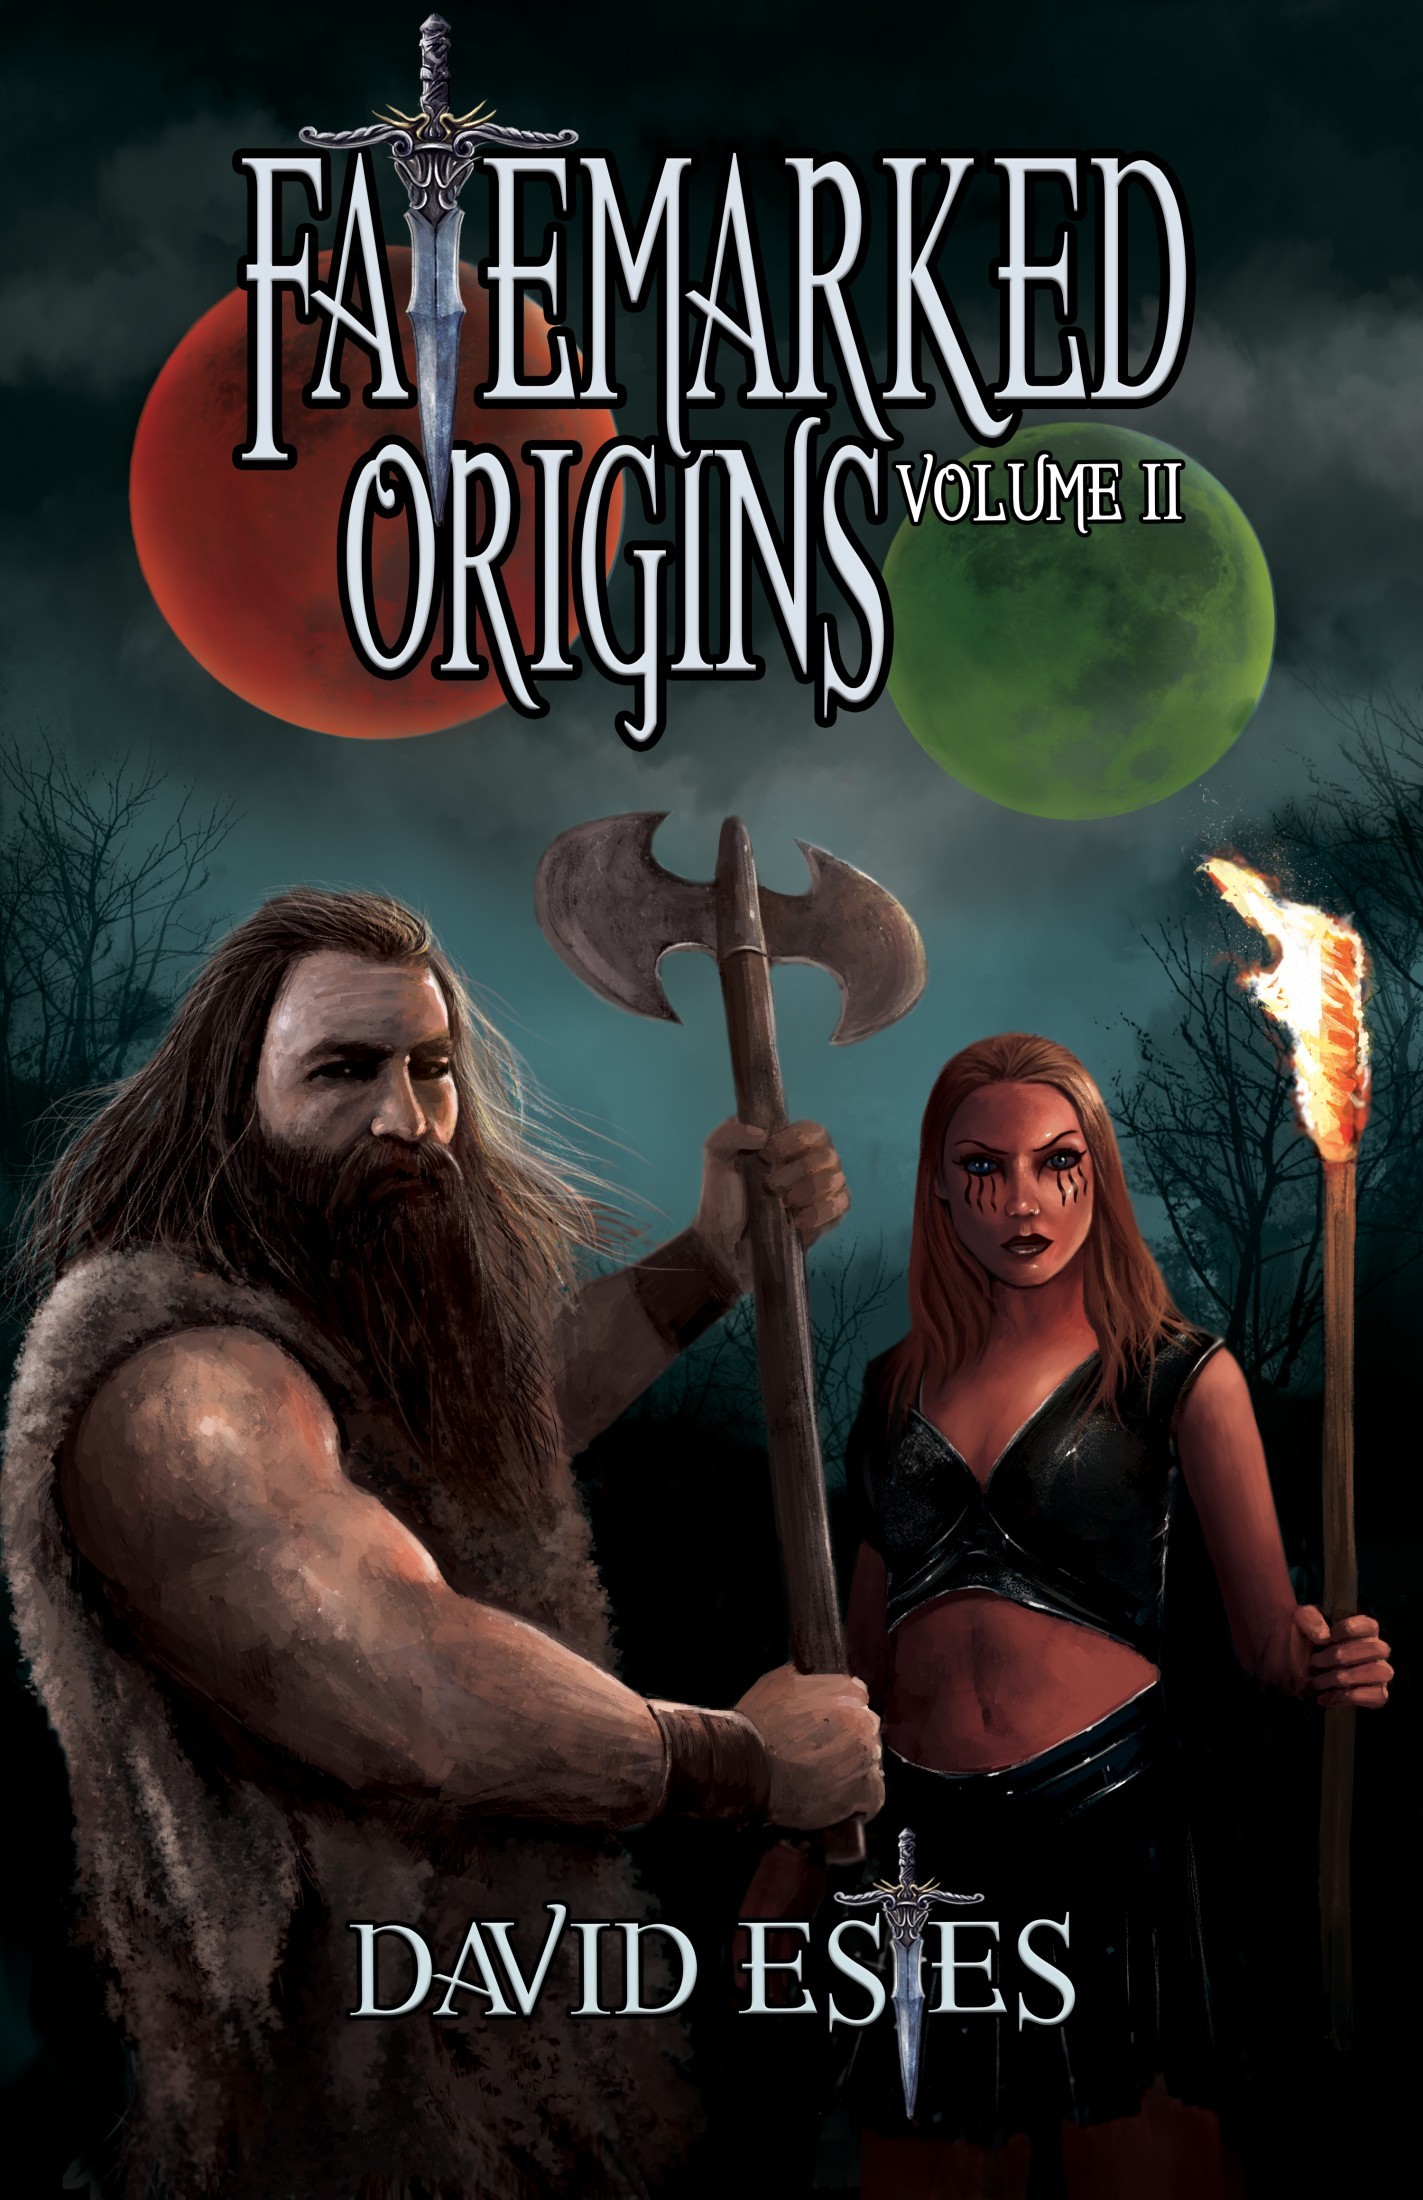 Fatemarked Origins: Volume II